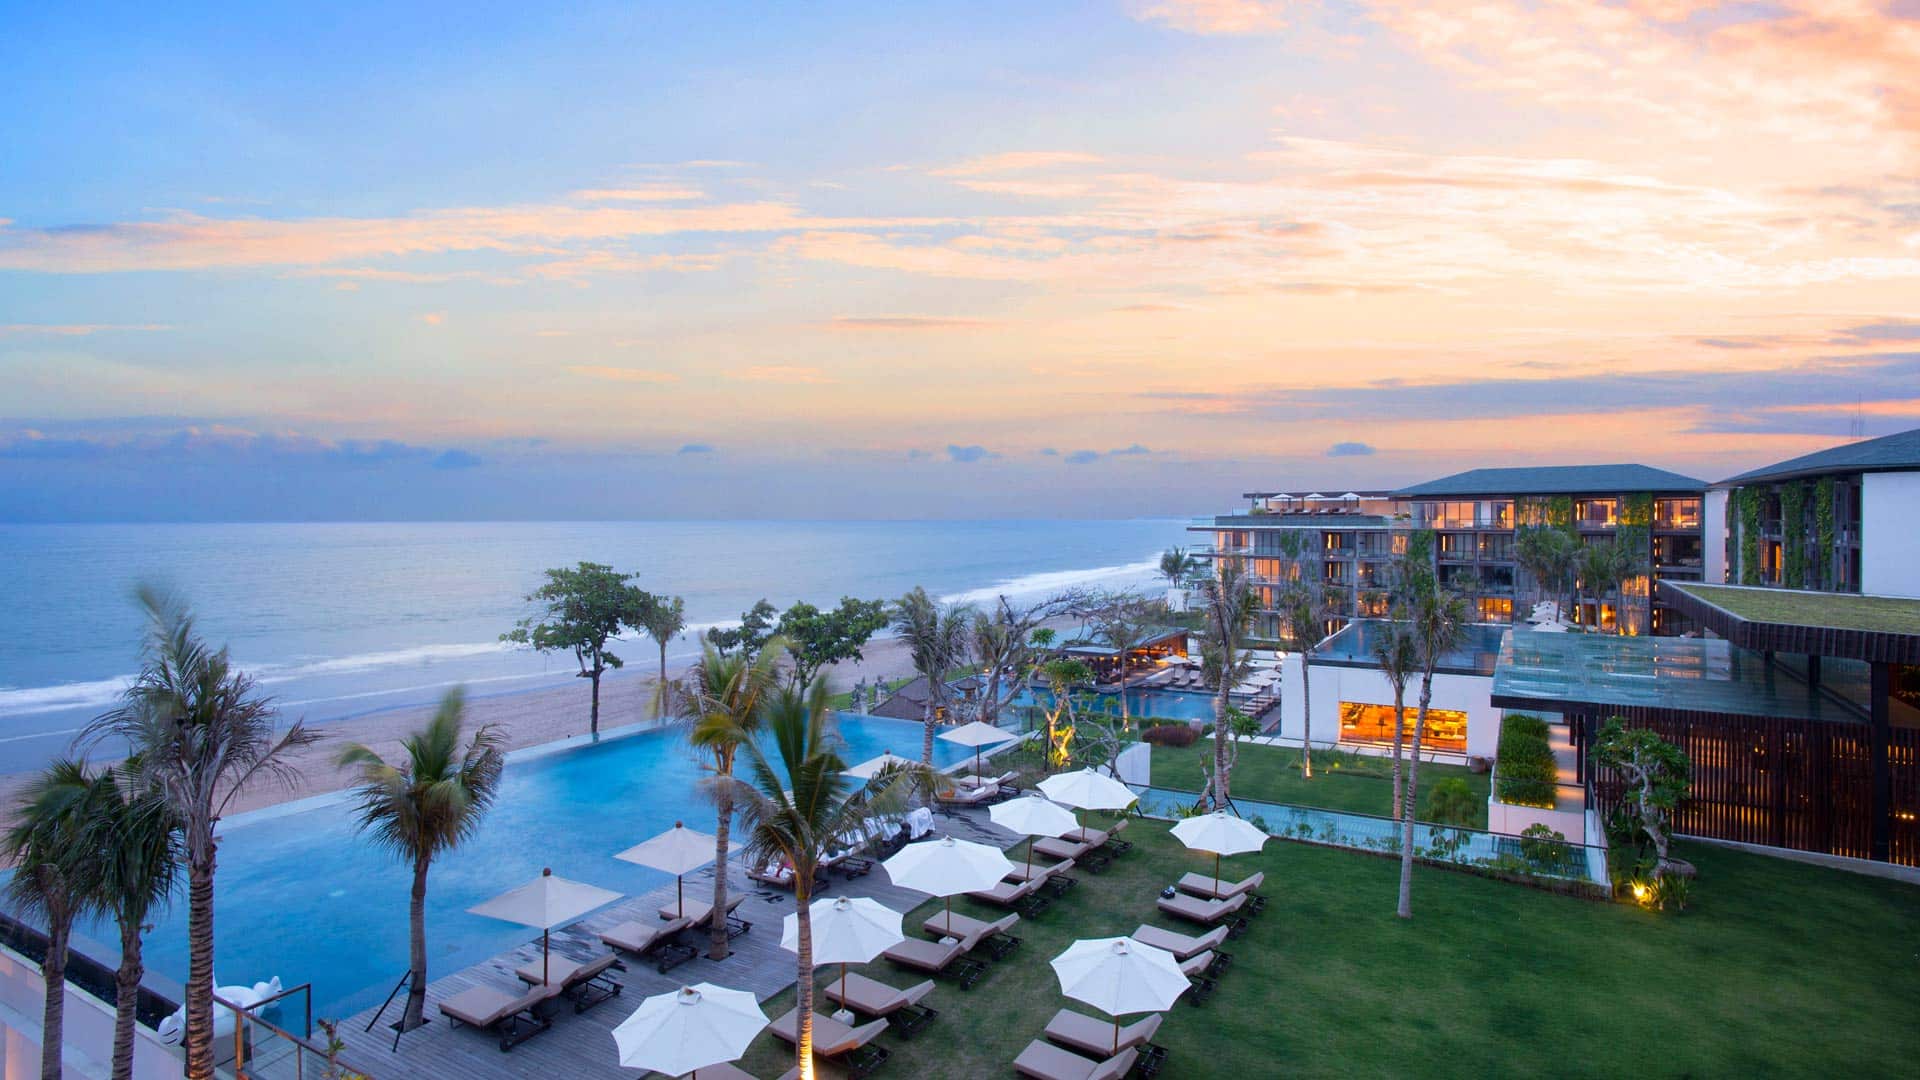 Alila Seminyak The Best Hotel In Bali  